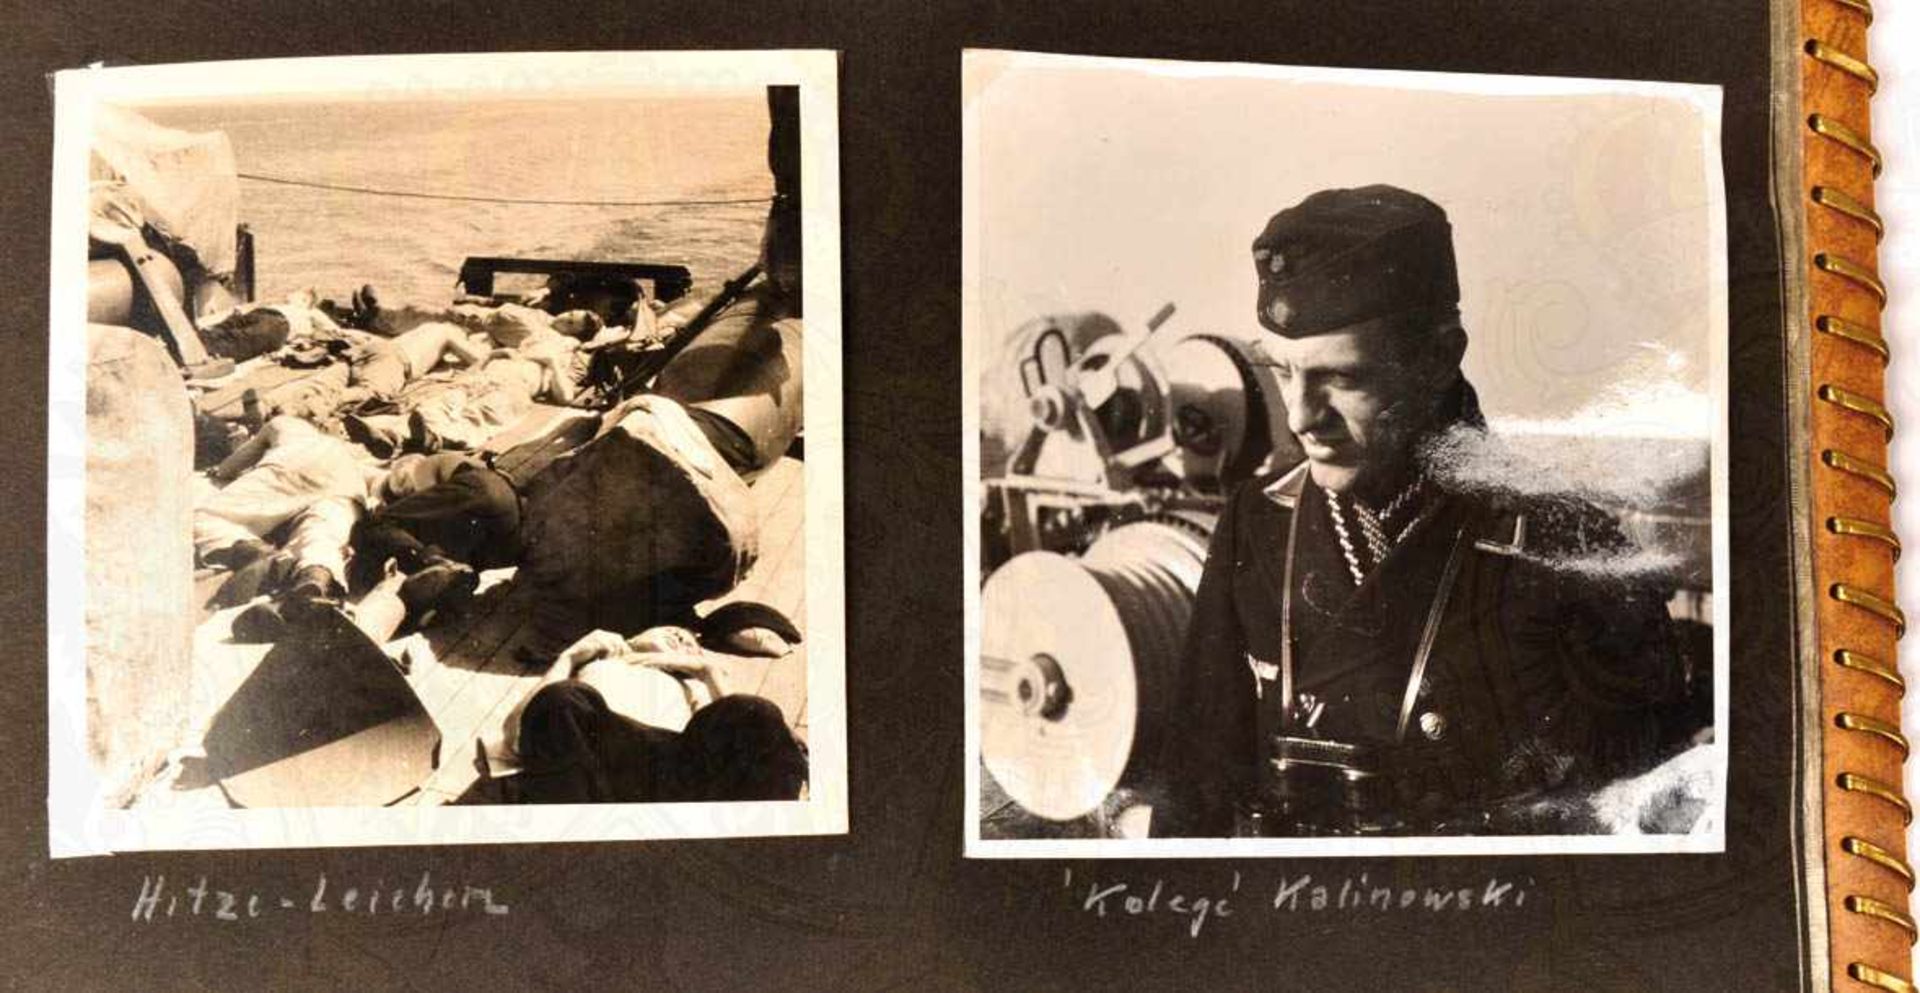 FOTOALBUM EINES OBERMAATEN, auf Minensuchboot M 29 (3. Minensuchflottille), ca. 85 Aufnahmen, tls. - Bild 10 aus 10